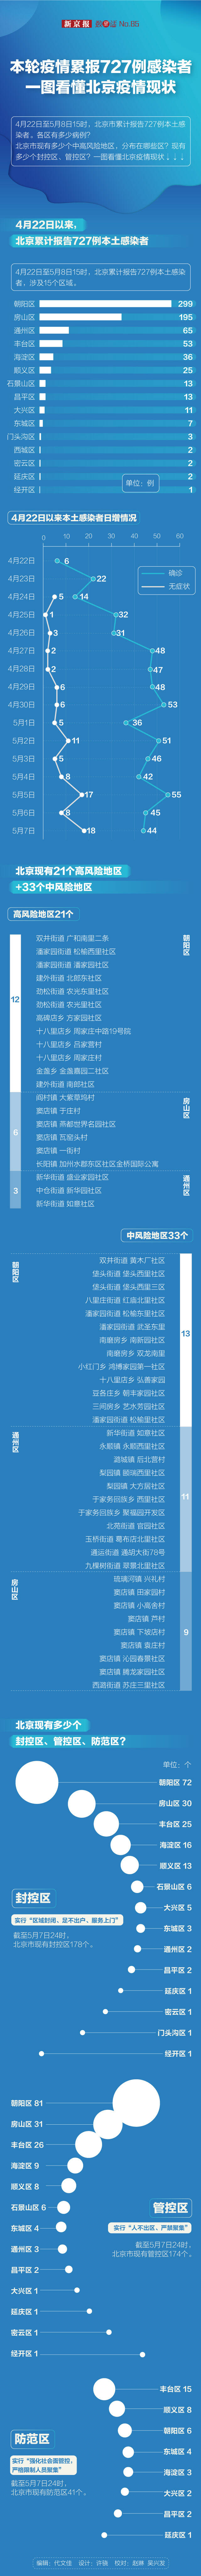 本轮疫情累报727例本土感染者 一图看懂北京疫情现状